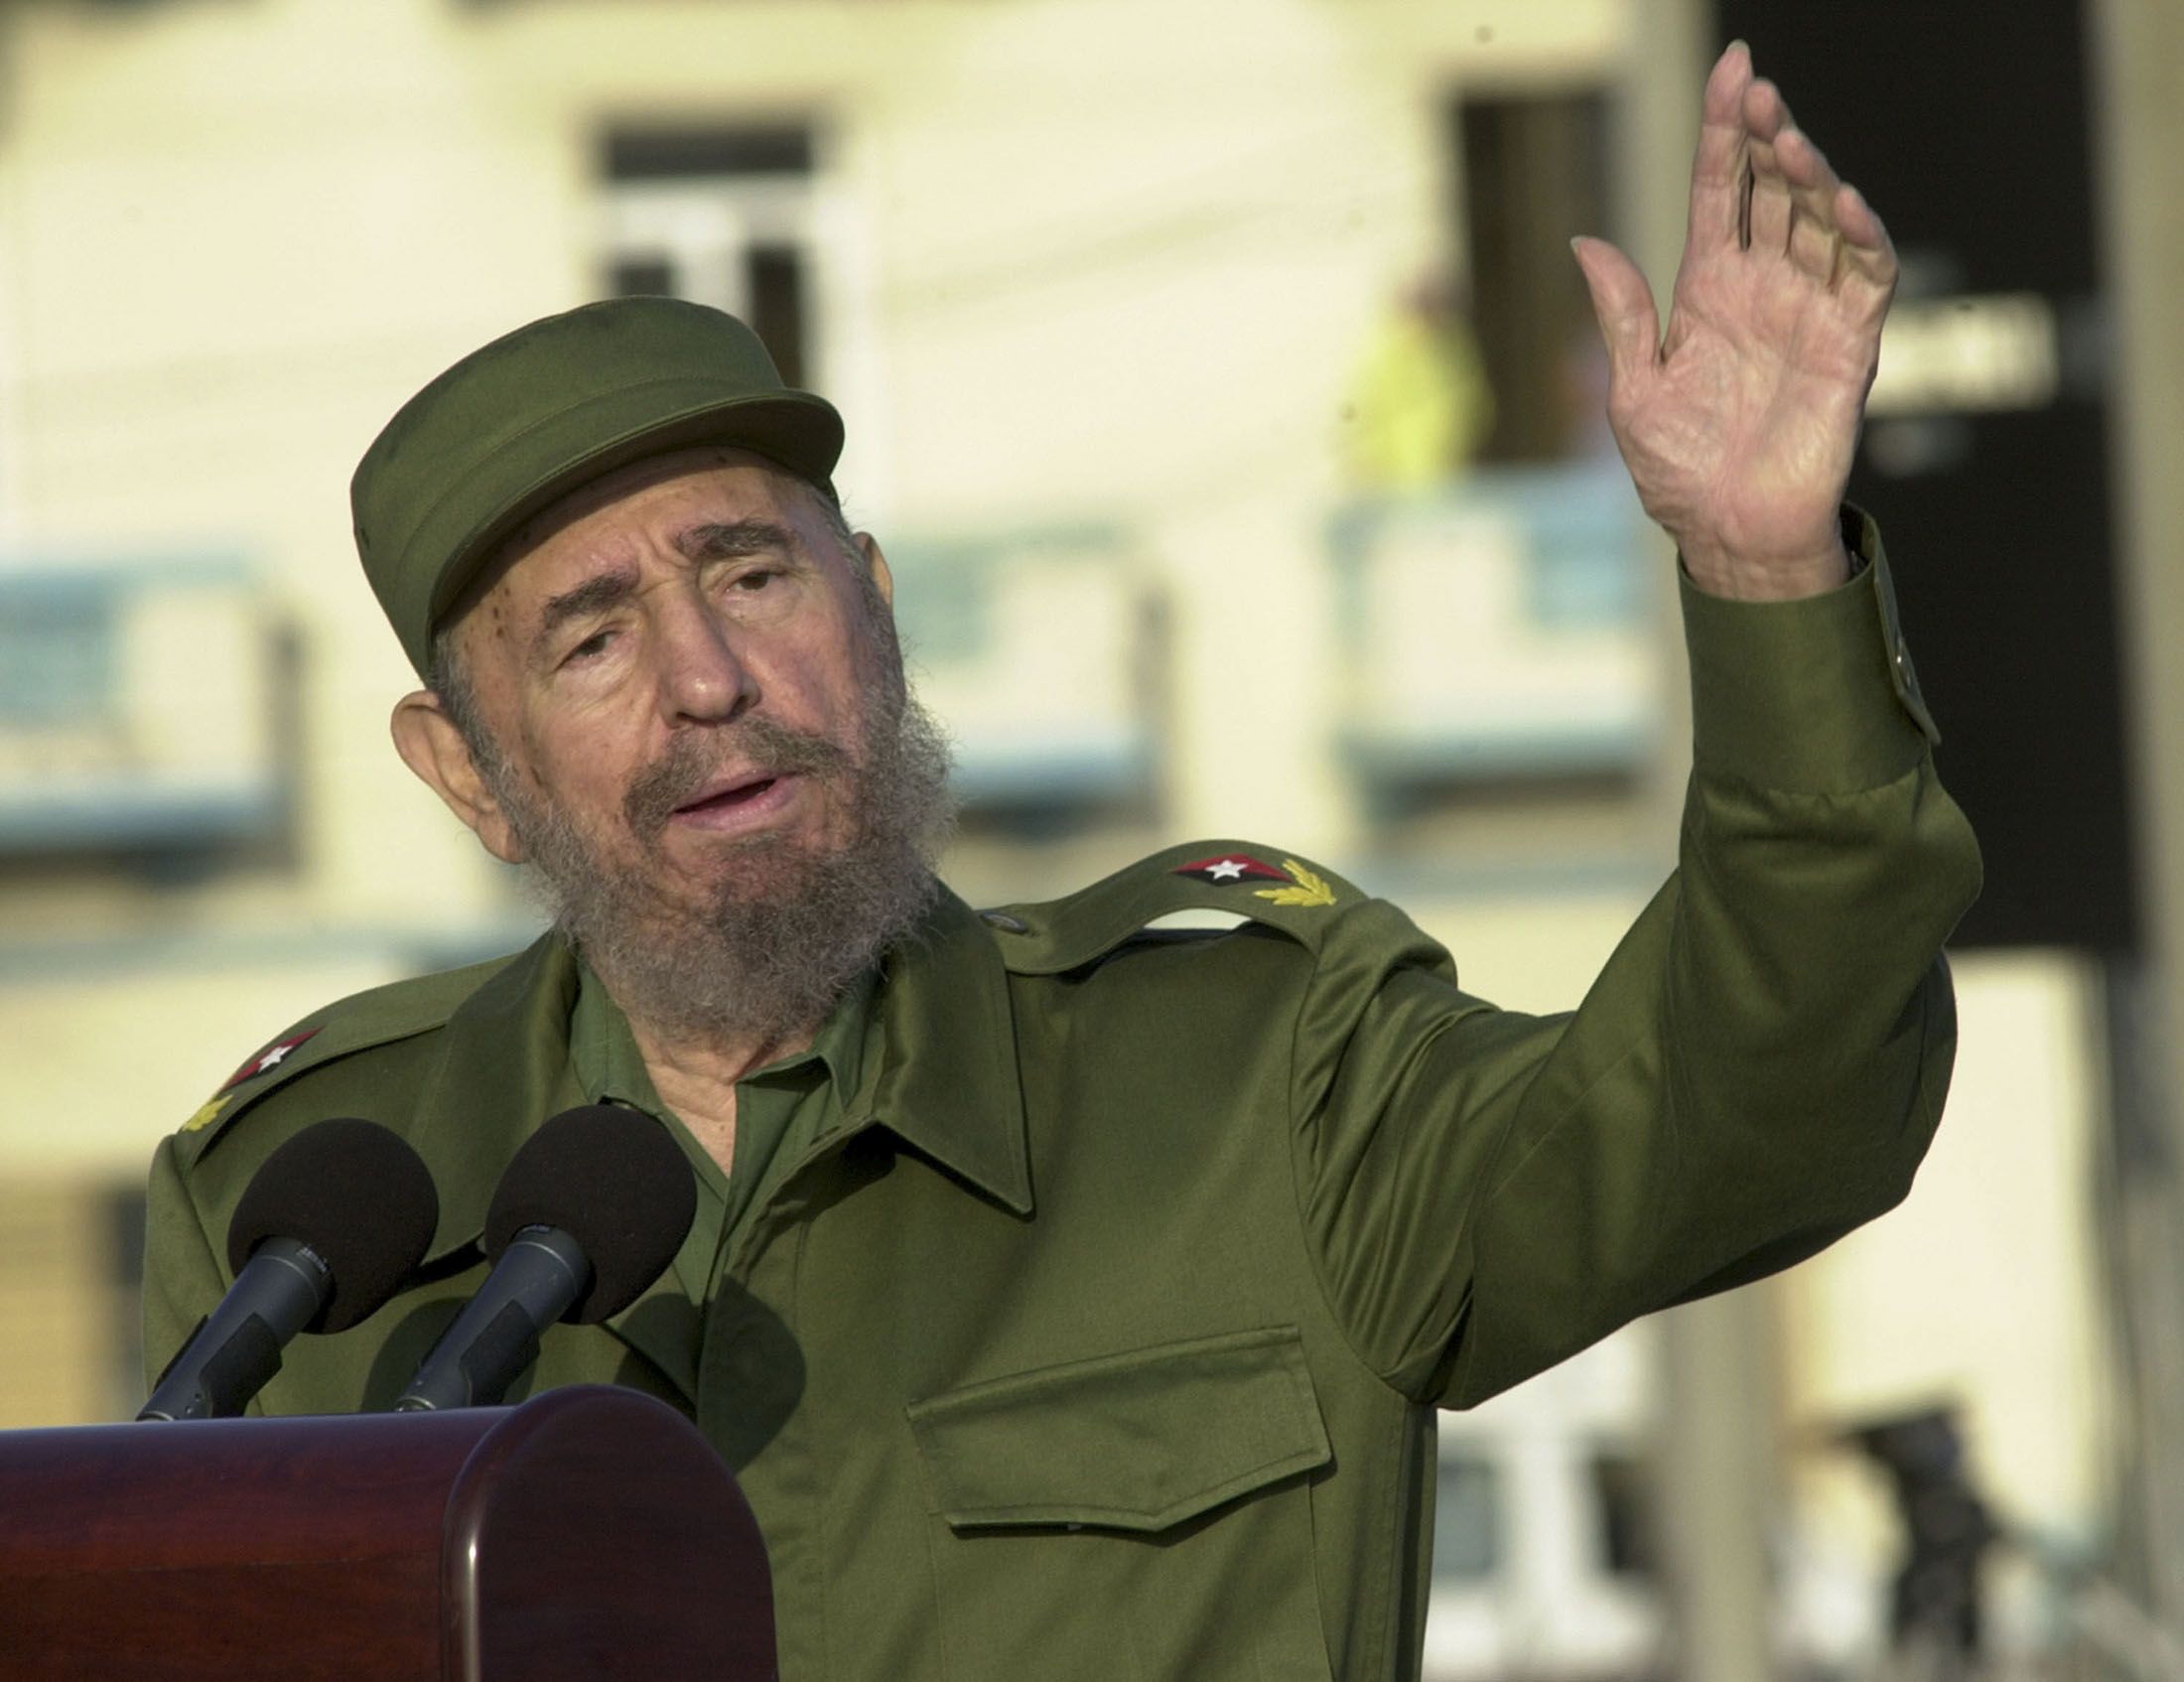 El líder revolucionario Fidel Castro dejó el poder en 2006, dejando a su hermano Rául como sucesor. Falleció en 2016 a los 90 años